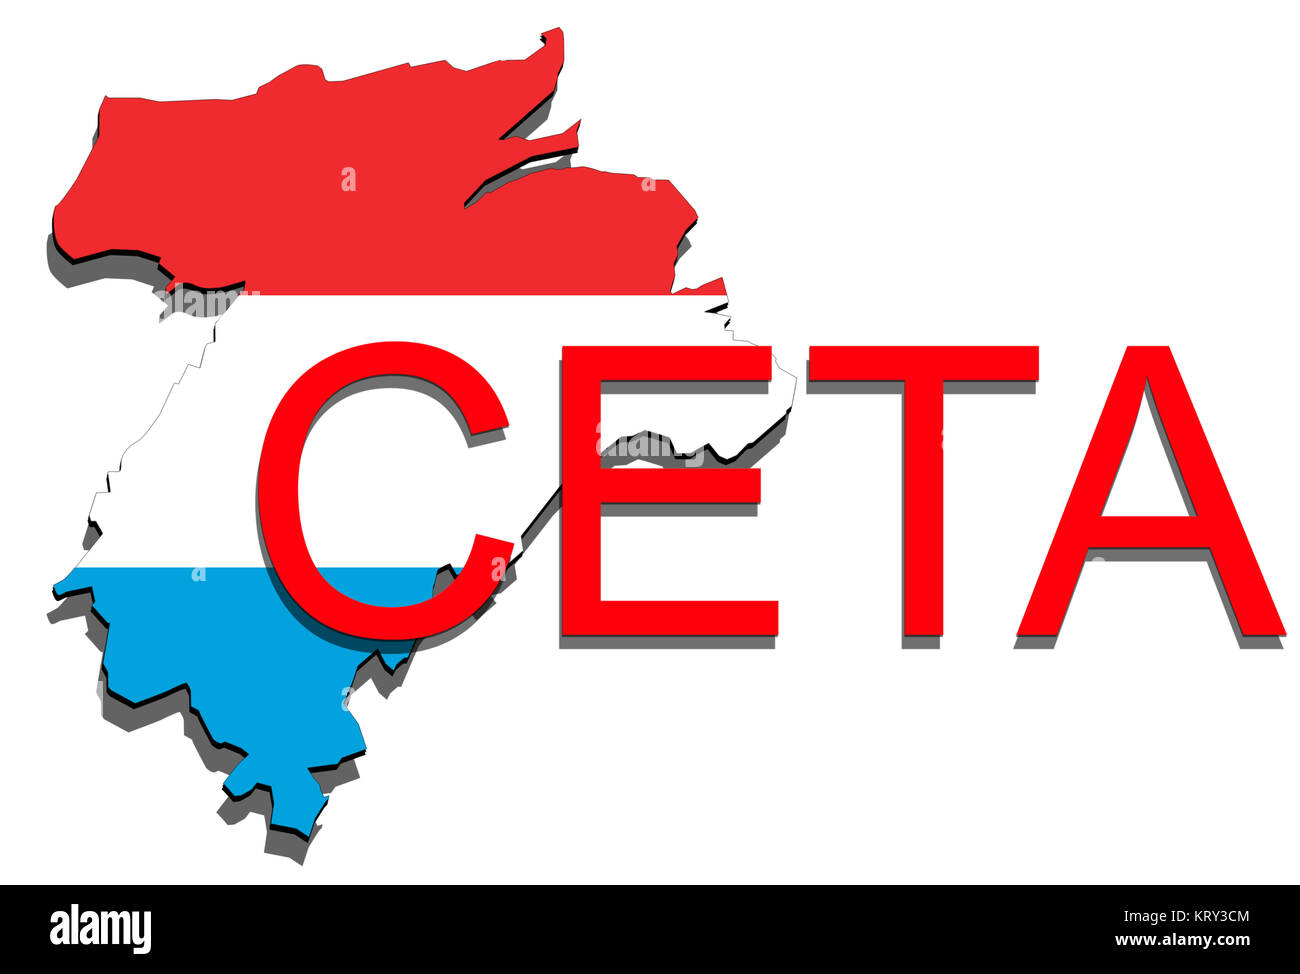 Â ceta - umfassendes Wirtschafts- und Handelsabkommen, Luxemburg Karte auf weißem Hintergrund Stockfoto